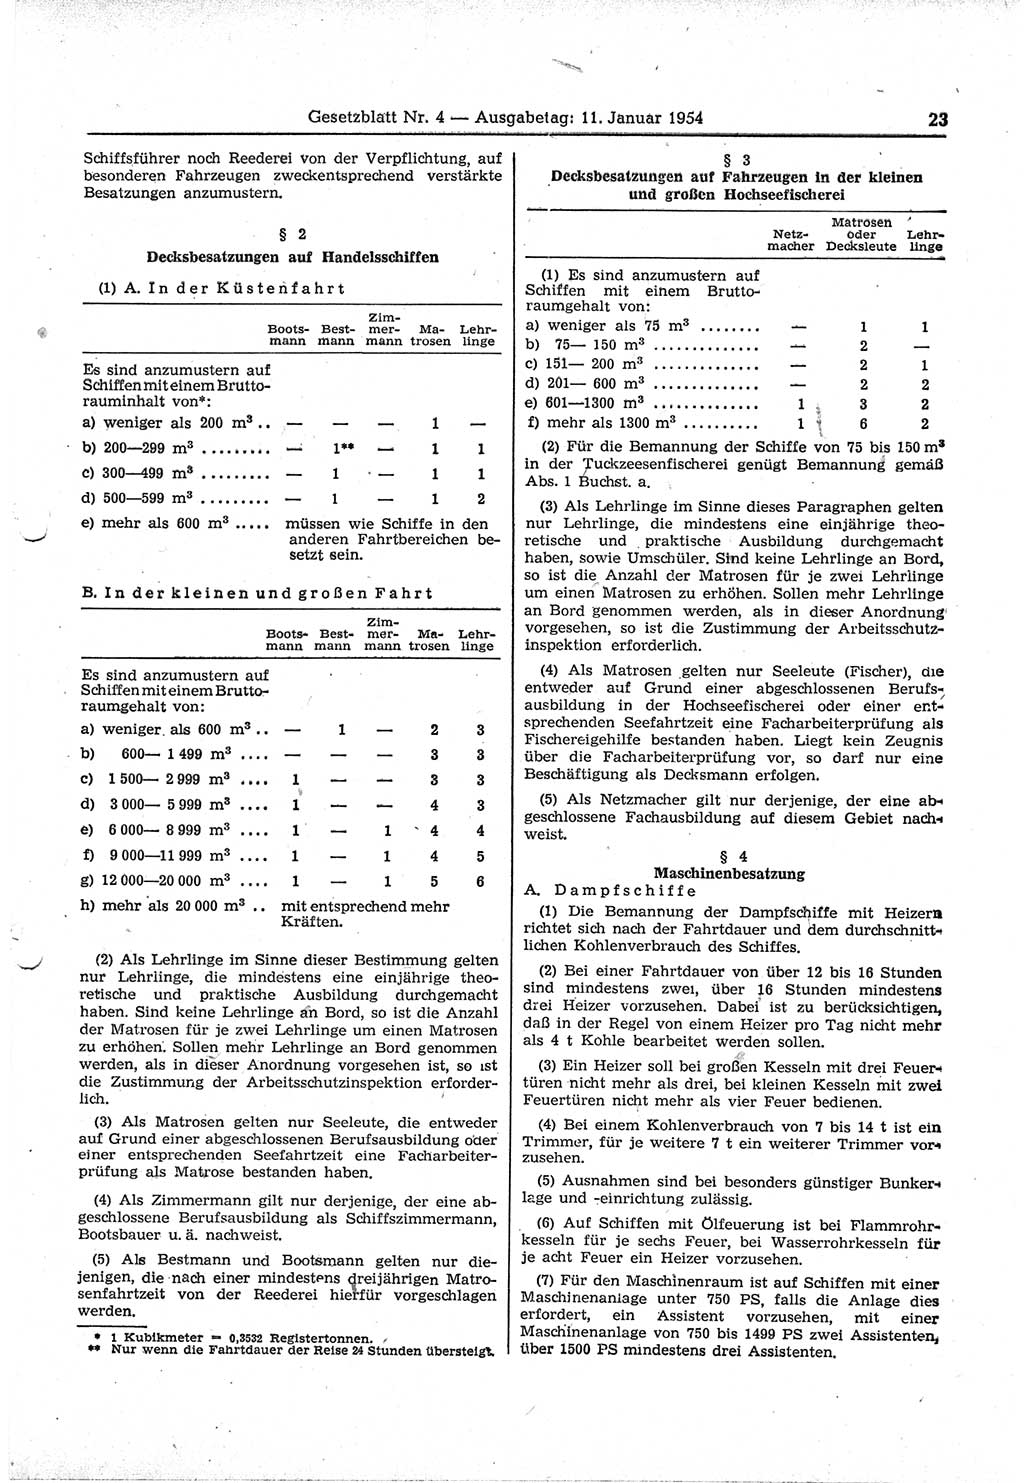 Gesetzblatt (GBl.) der Deutschen Demokratischen Republik (DDR) 1954, Seite 23 (GBl. DDR 1954, S. 23)